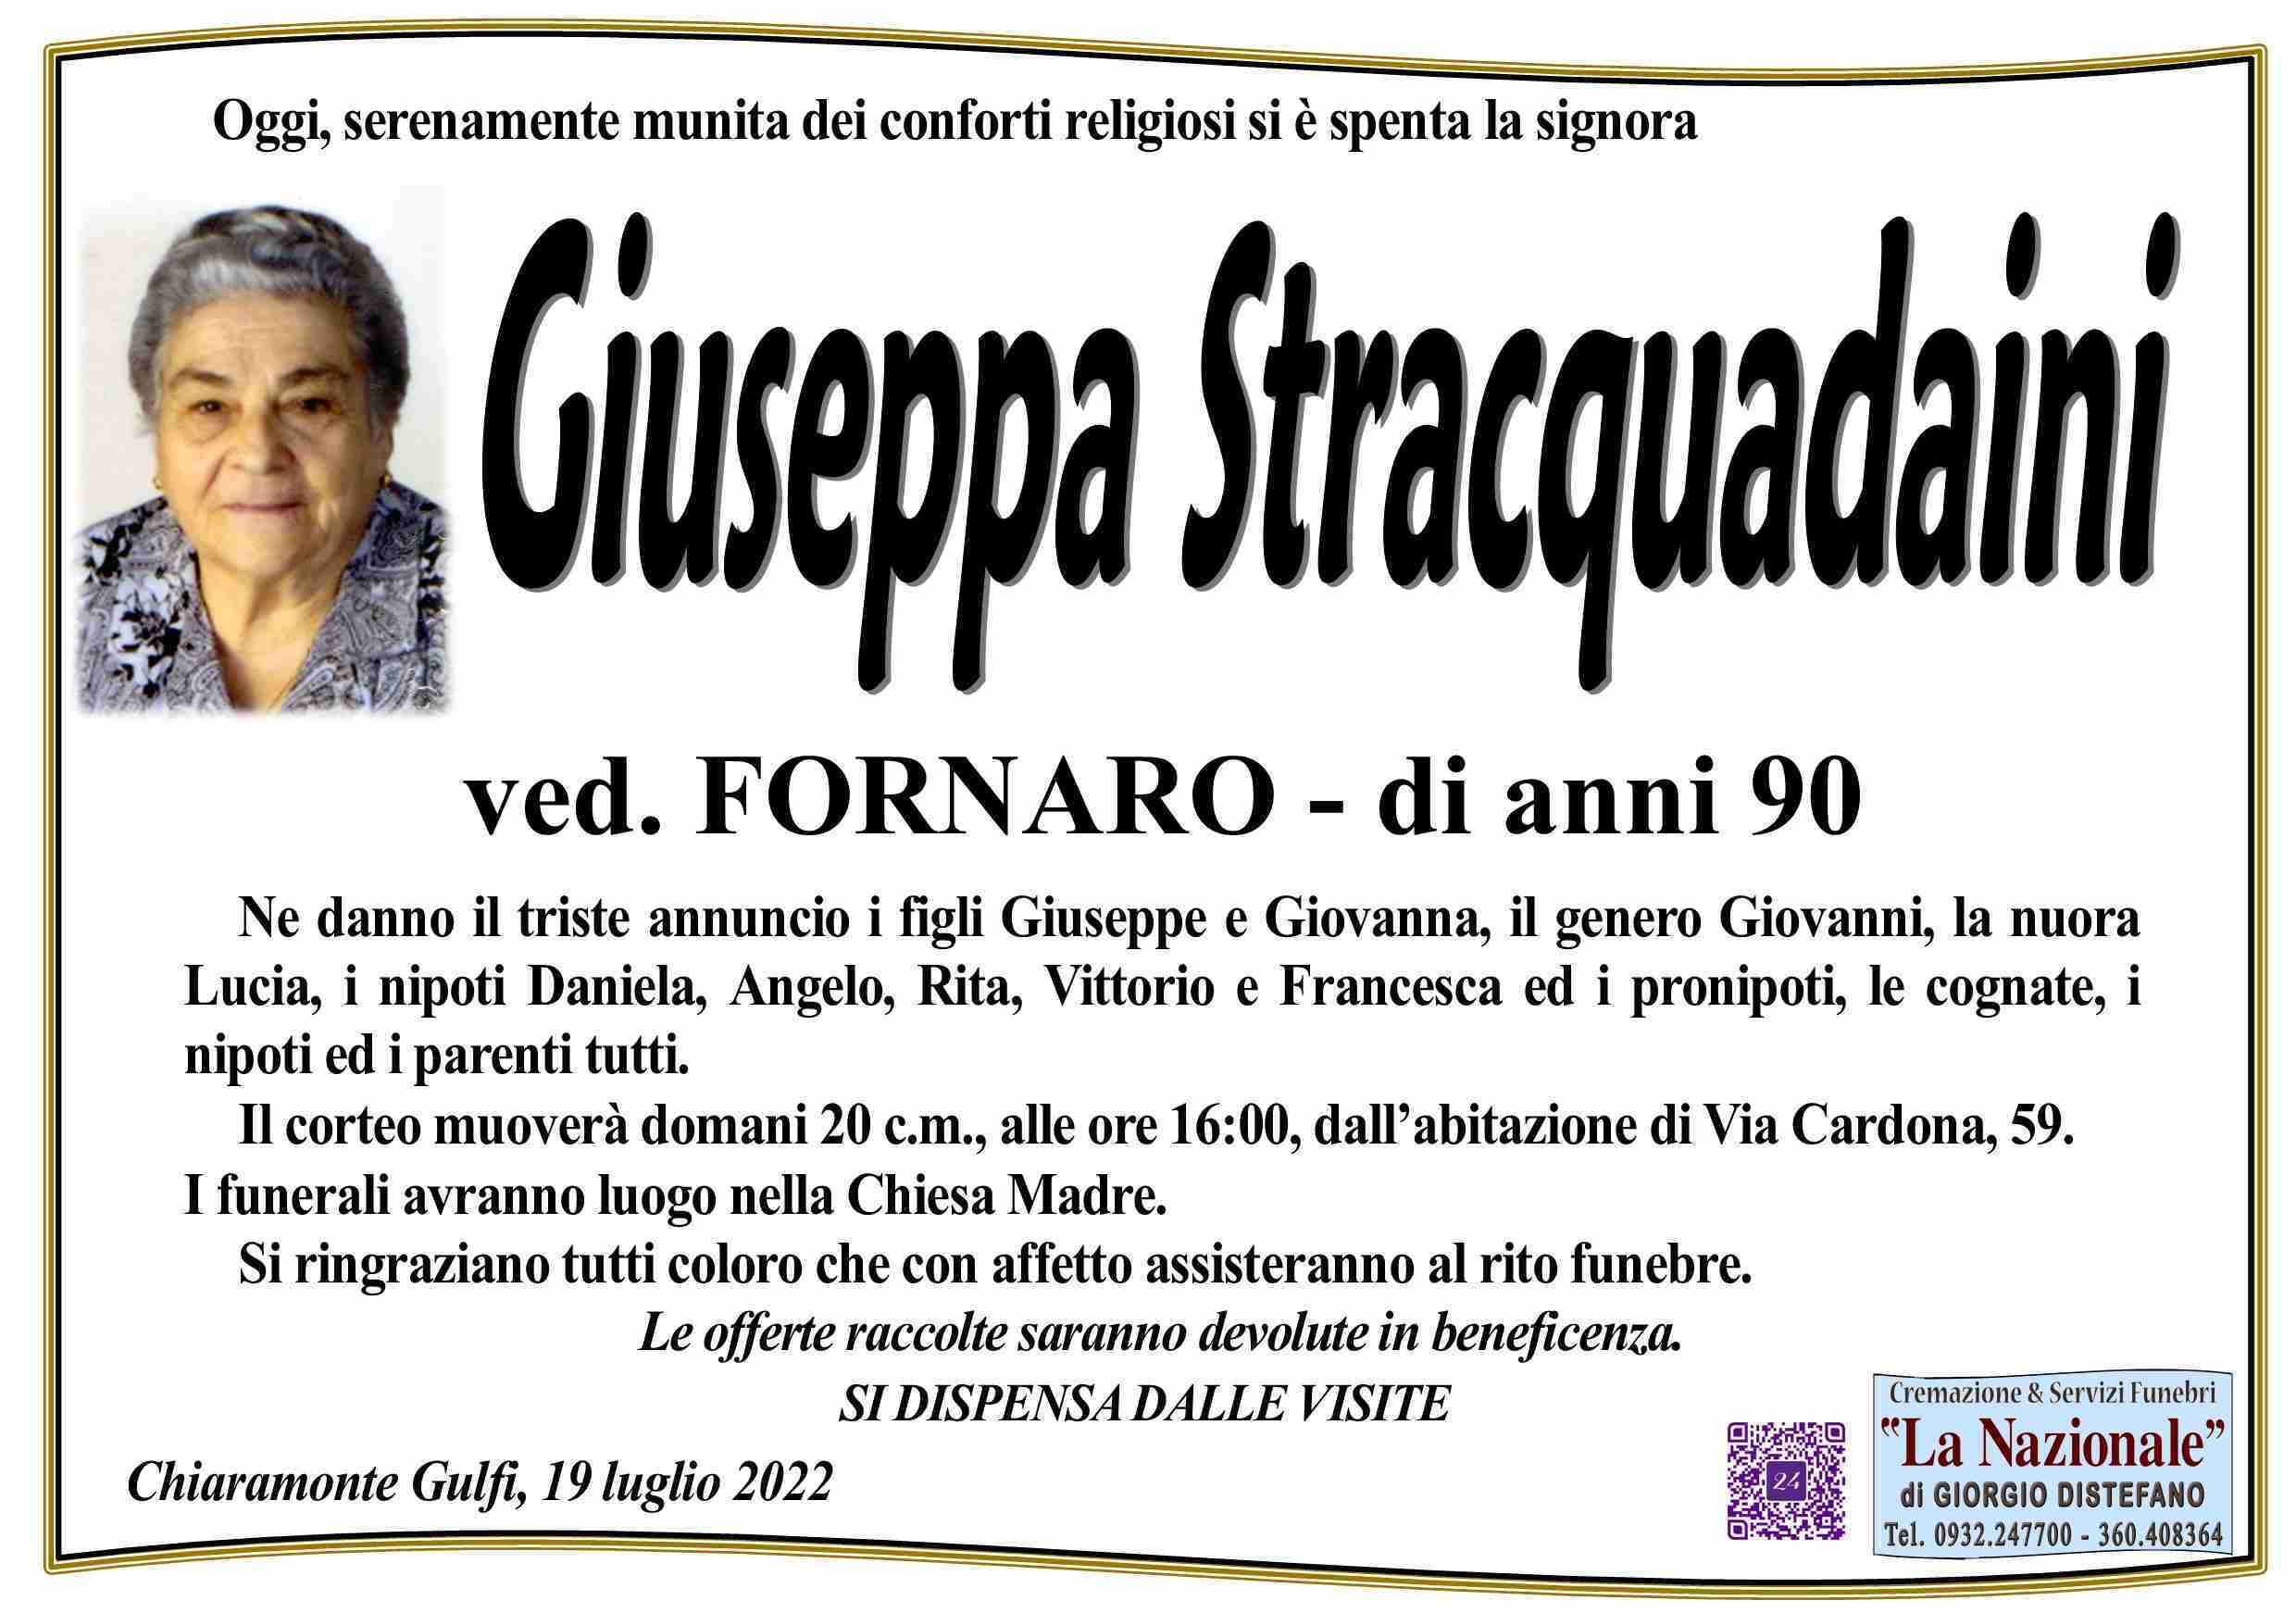 Giuseppa Stracquadaini